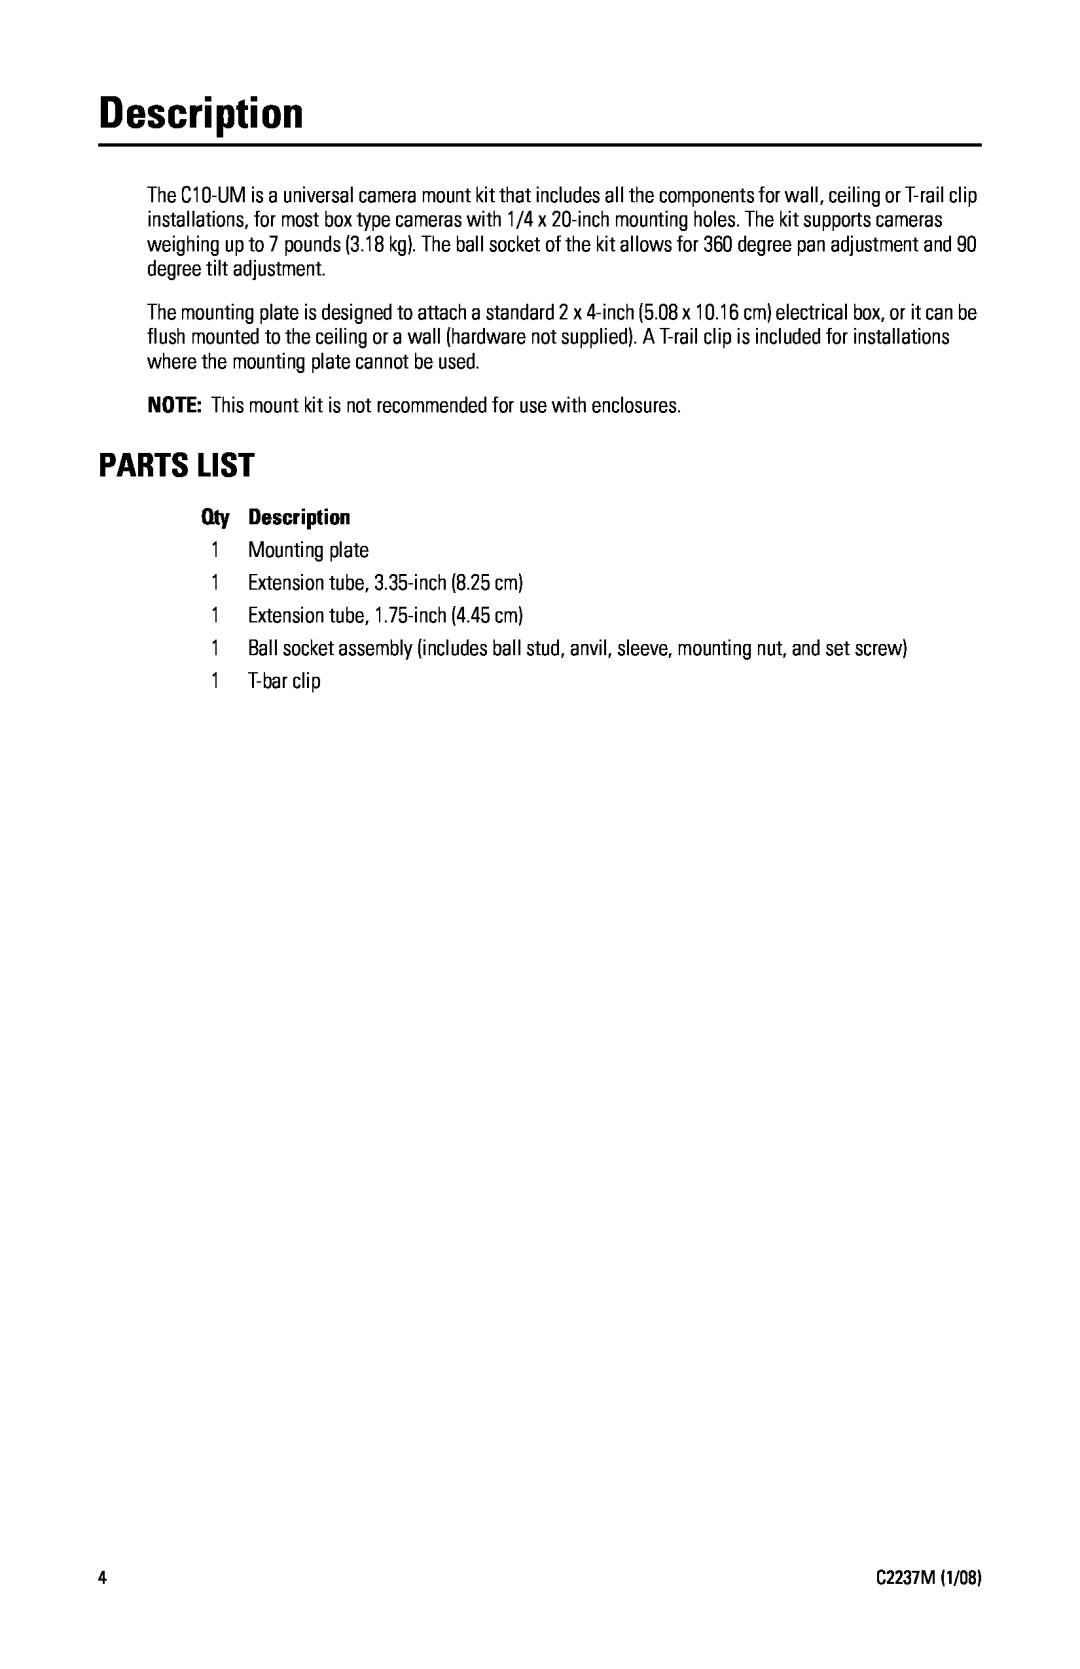 Pelco C2237M manual Parts List, Qty Description 